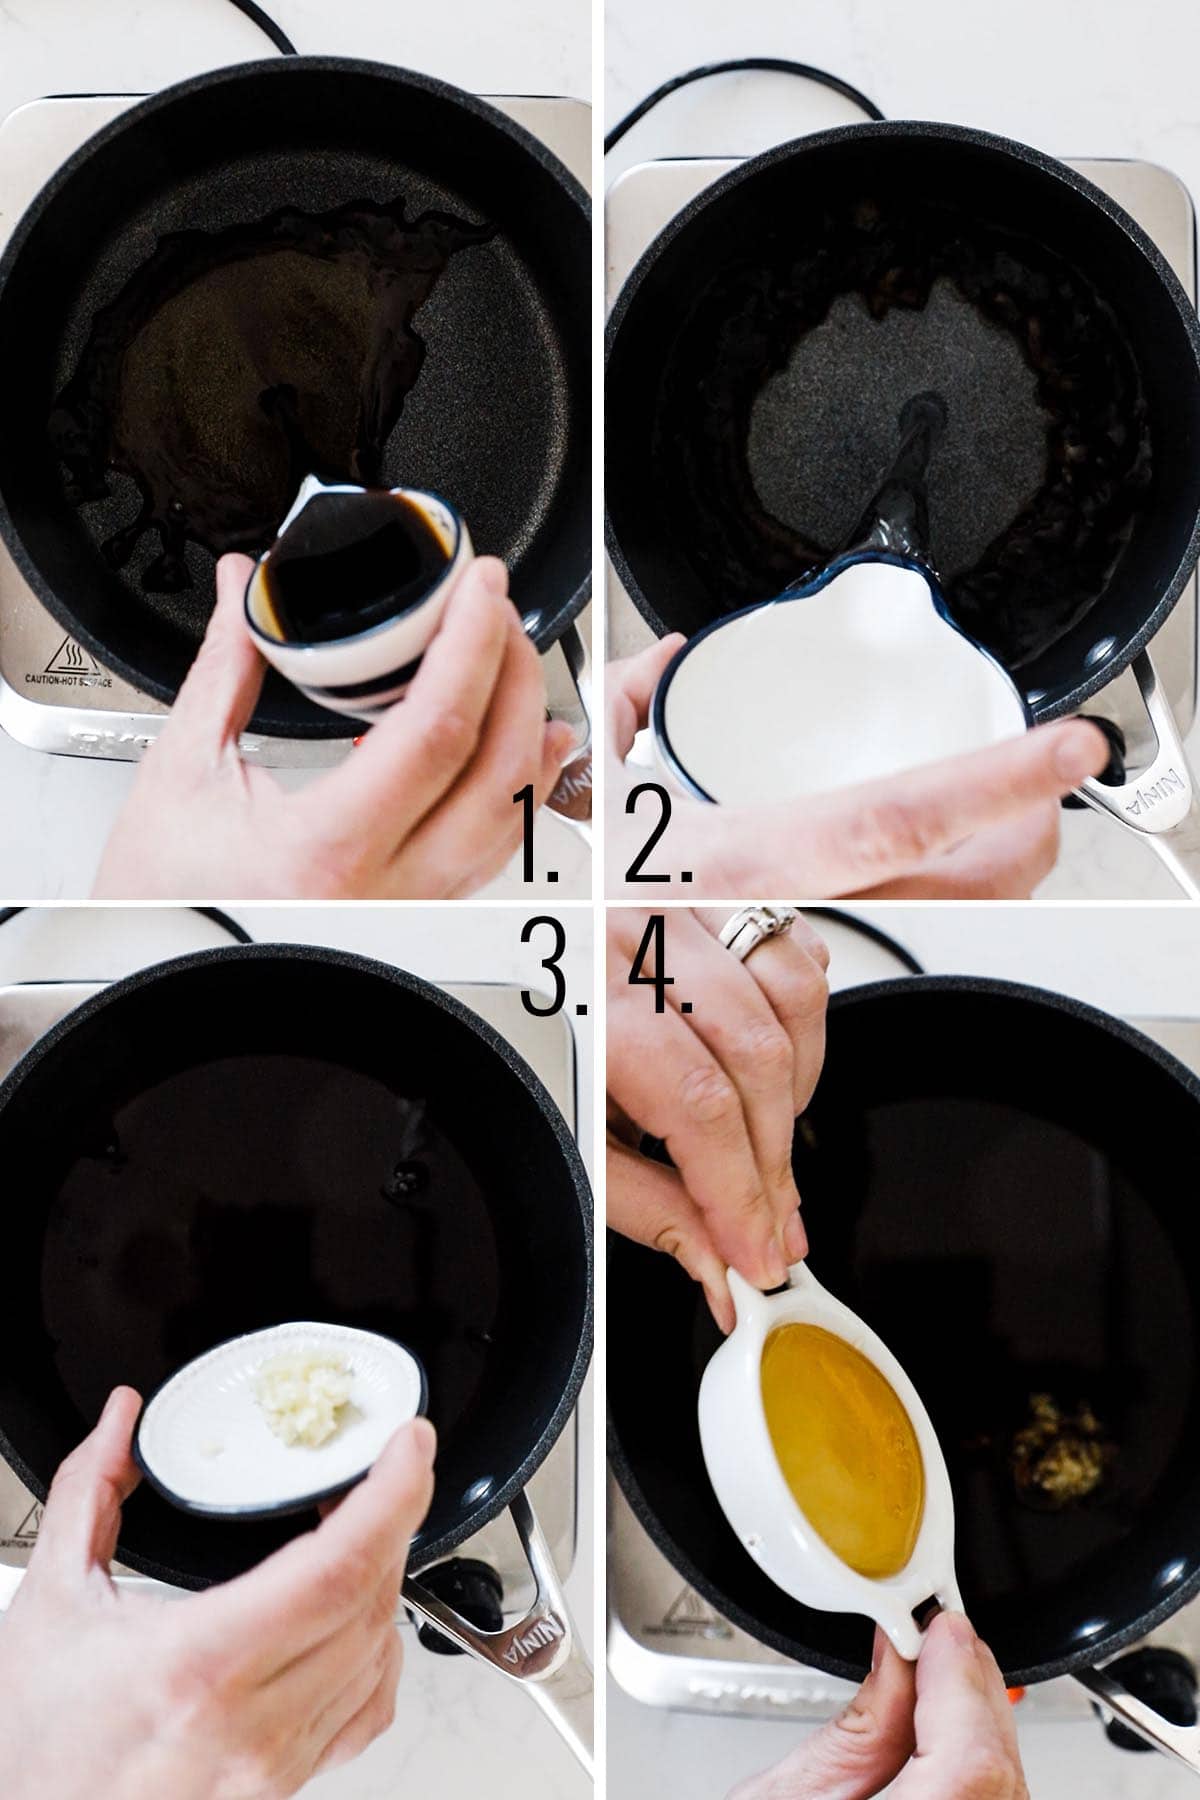 How to make homemade teriyaki sauce.